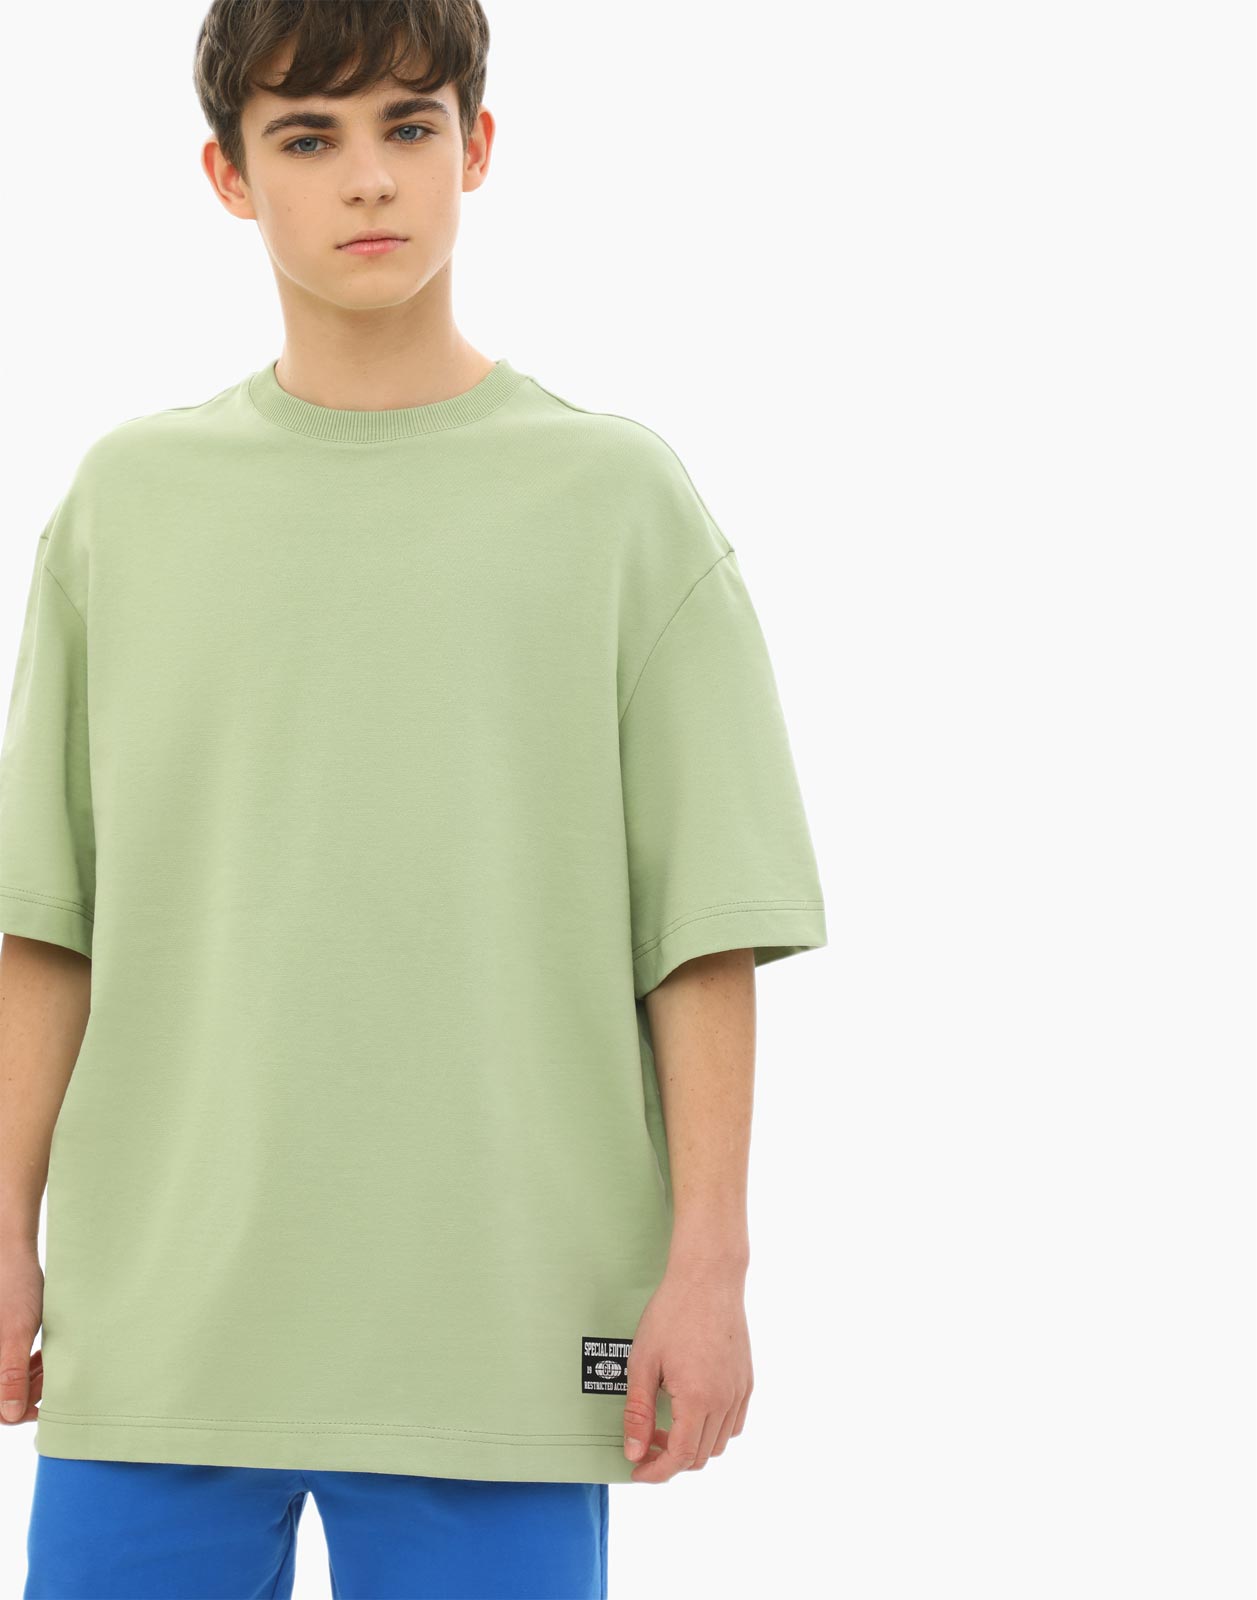 Оливковая базовая футболка для мальчика 14+/170